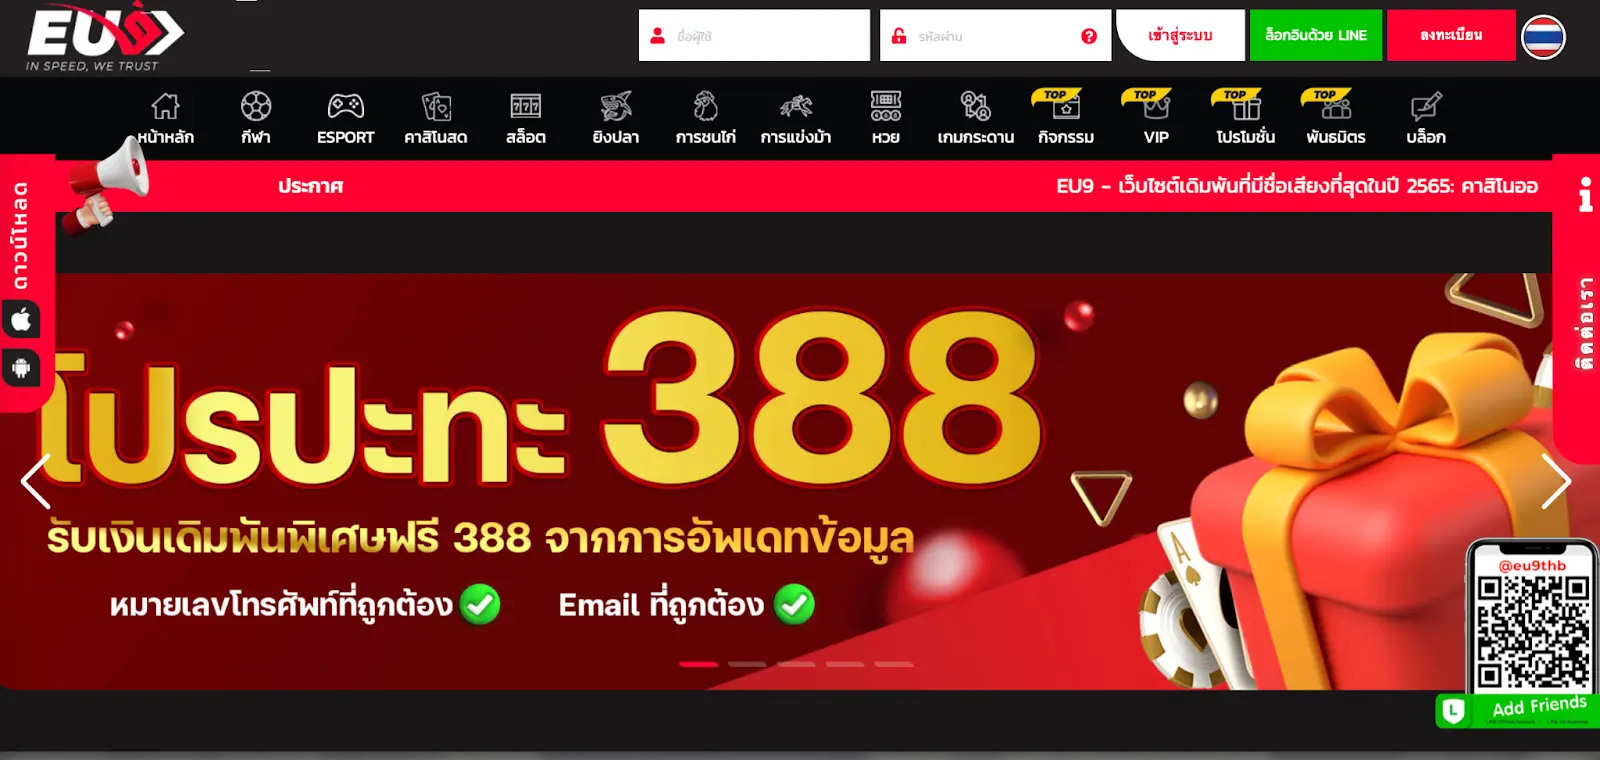 EU9 Online Casino Thailand